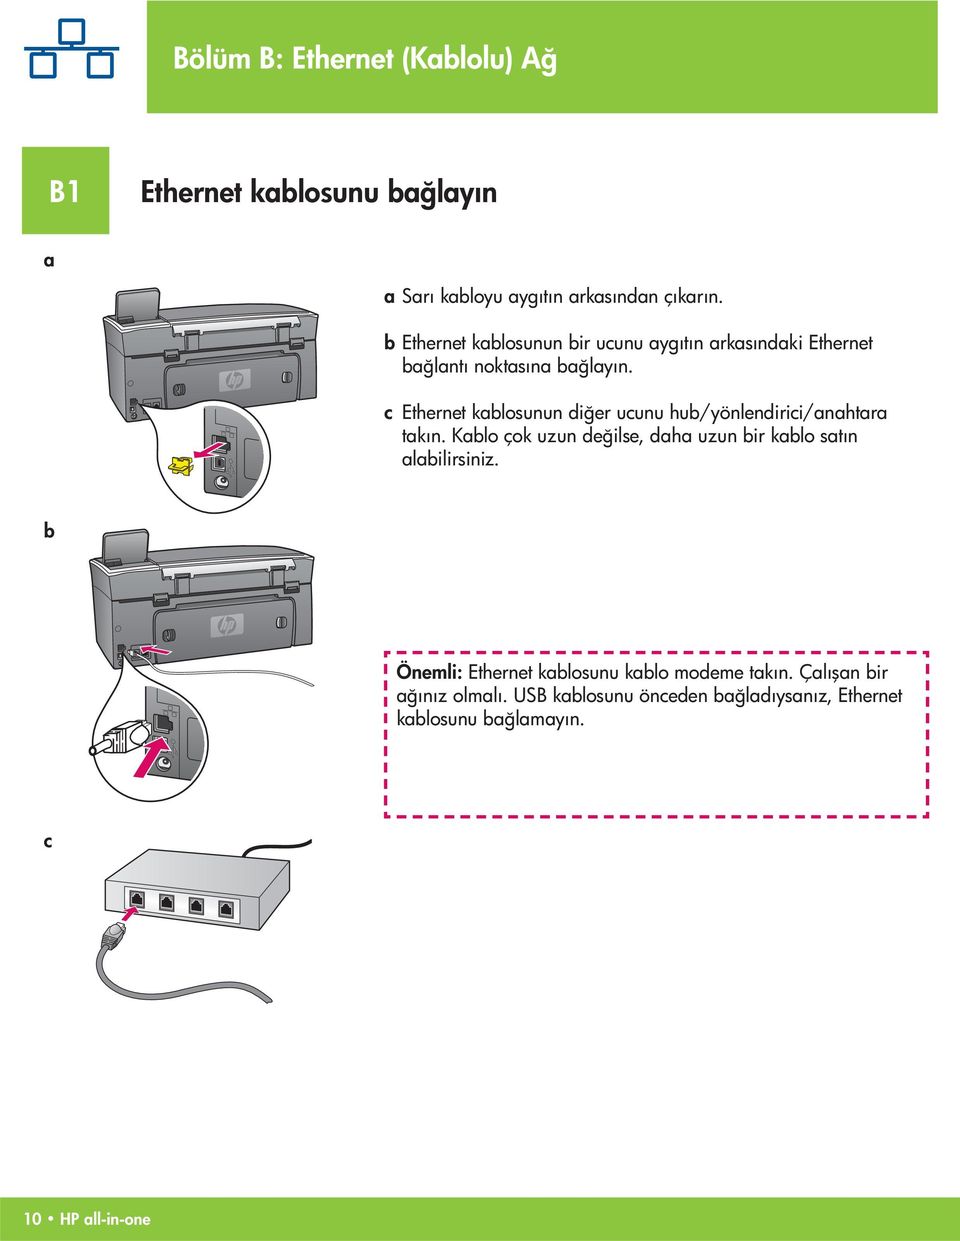 c Ethernet kablosunun diğer ucunu hub/yönlendirici/anahtara takın.